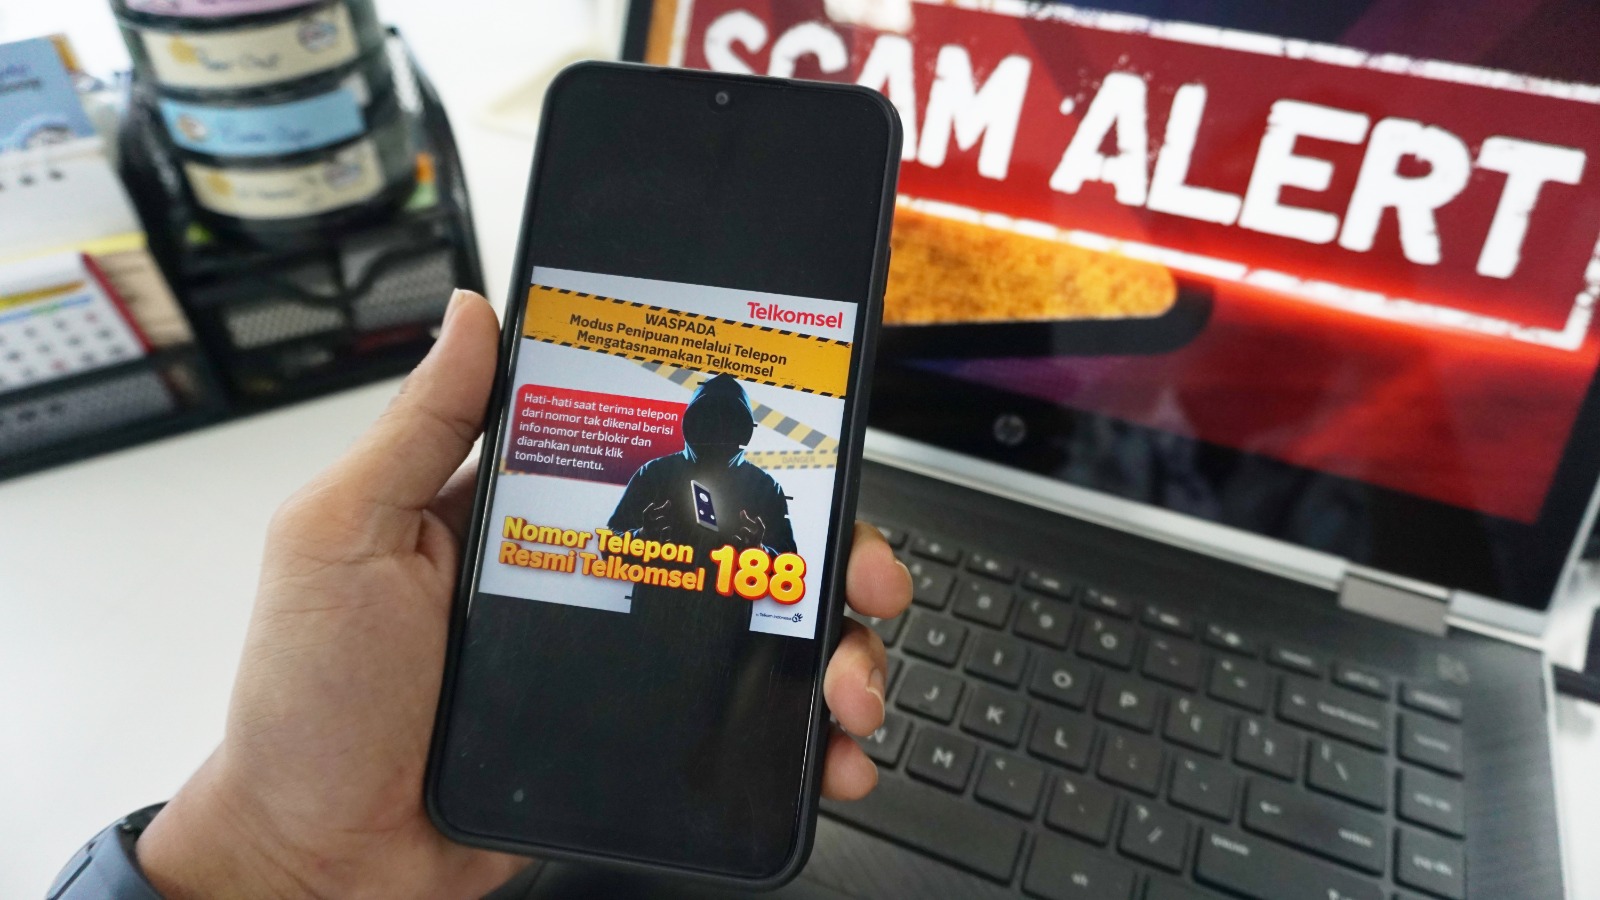 Pelanggan Telkomsel Harus Hati-hati, Waspadai Kejahatan dengan Modus Pemblokiran Nomor